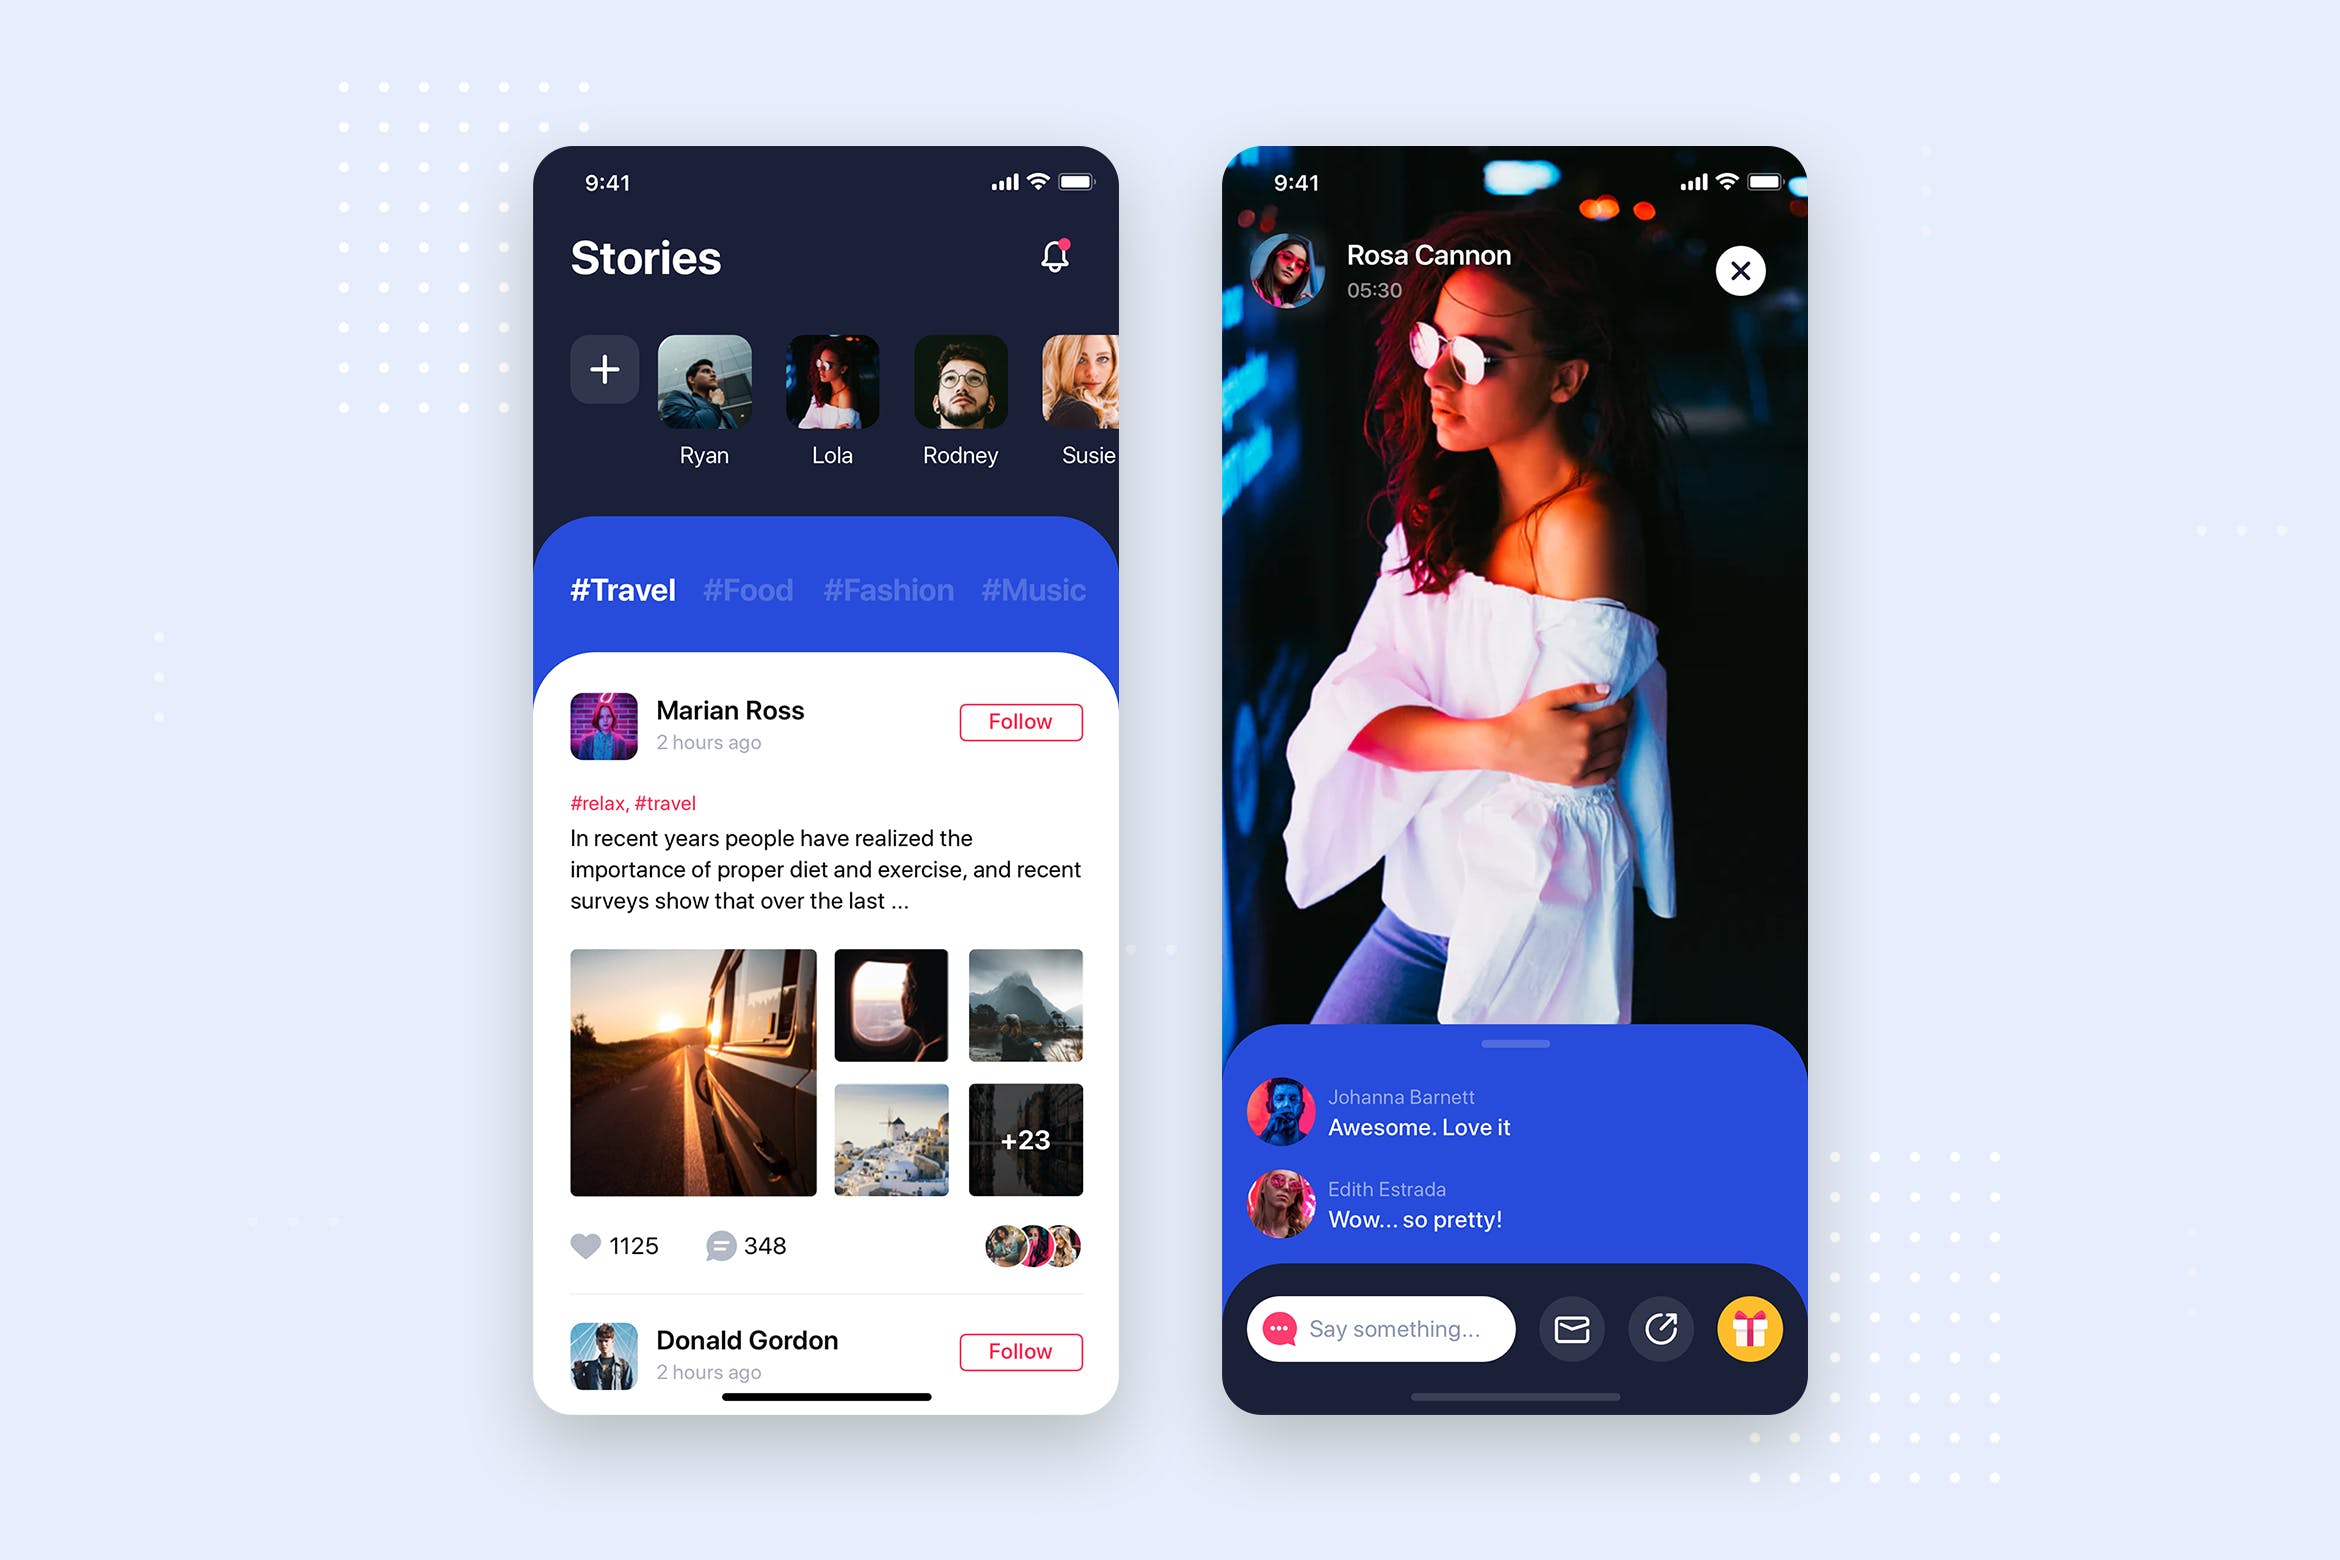 社交APP应用频道列表&详情界面设计蚂蚁素材精选模板 Social Stories Mobile App UI Kit Template插图